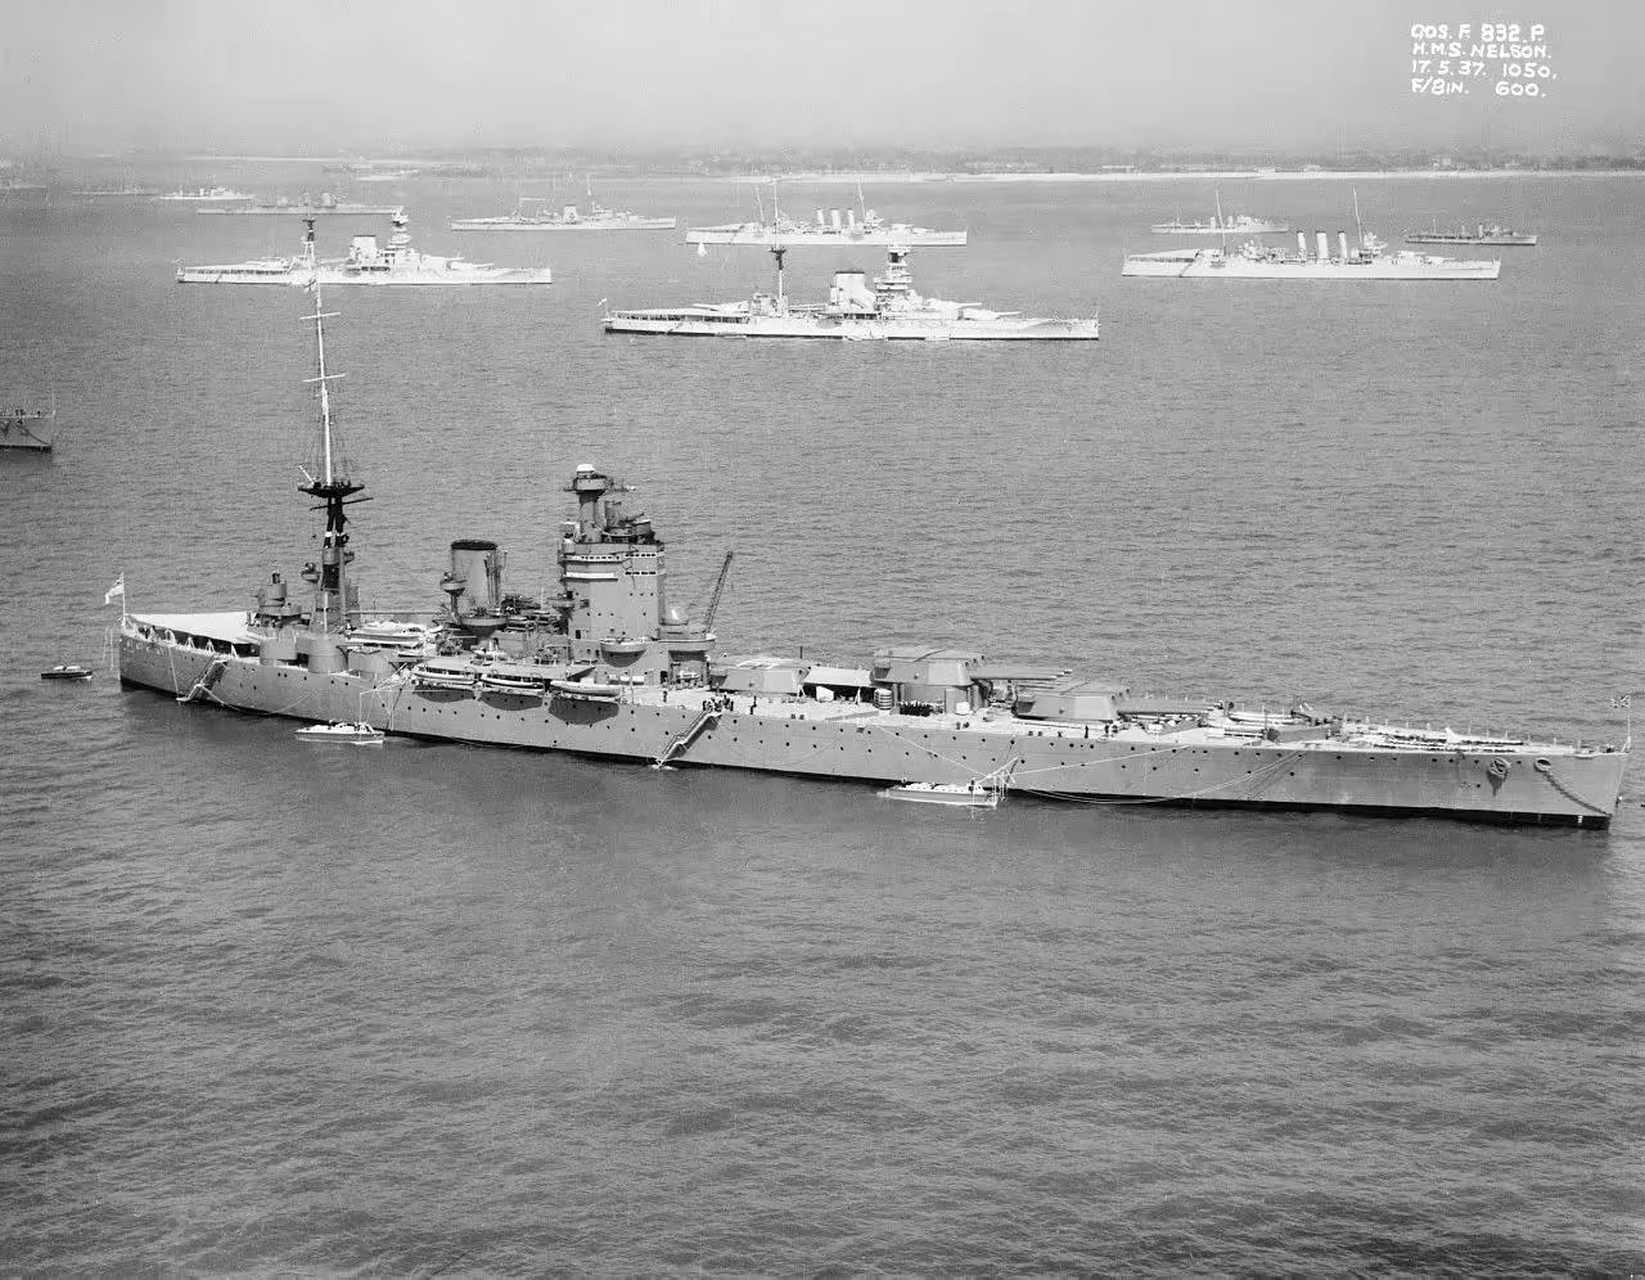 英国纳尔逊级战列舰,是皇家海军唯一一级装备406毫米口径主炮的战列舰